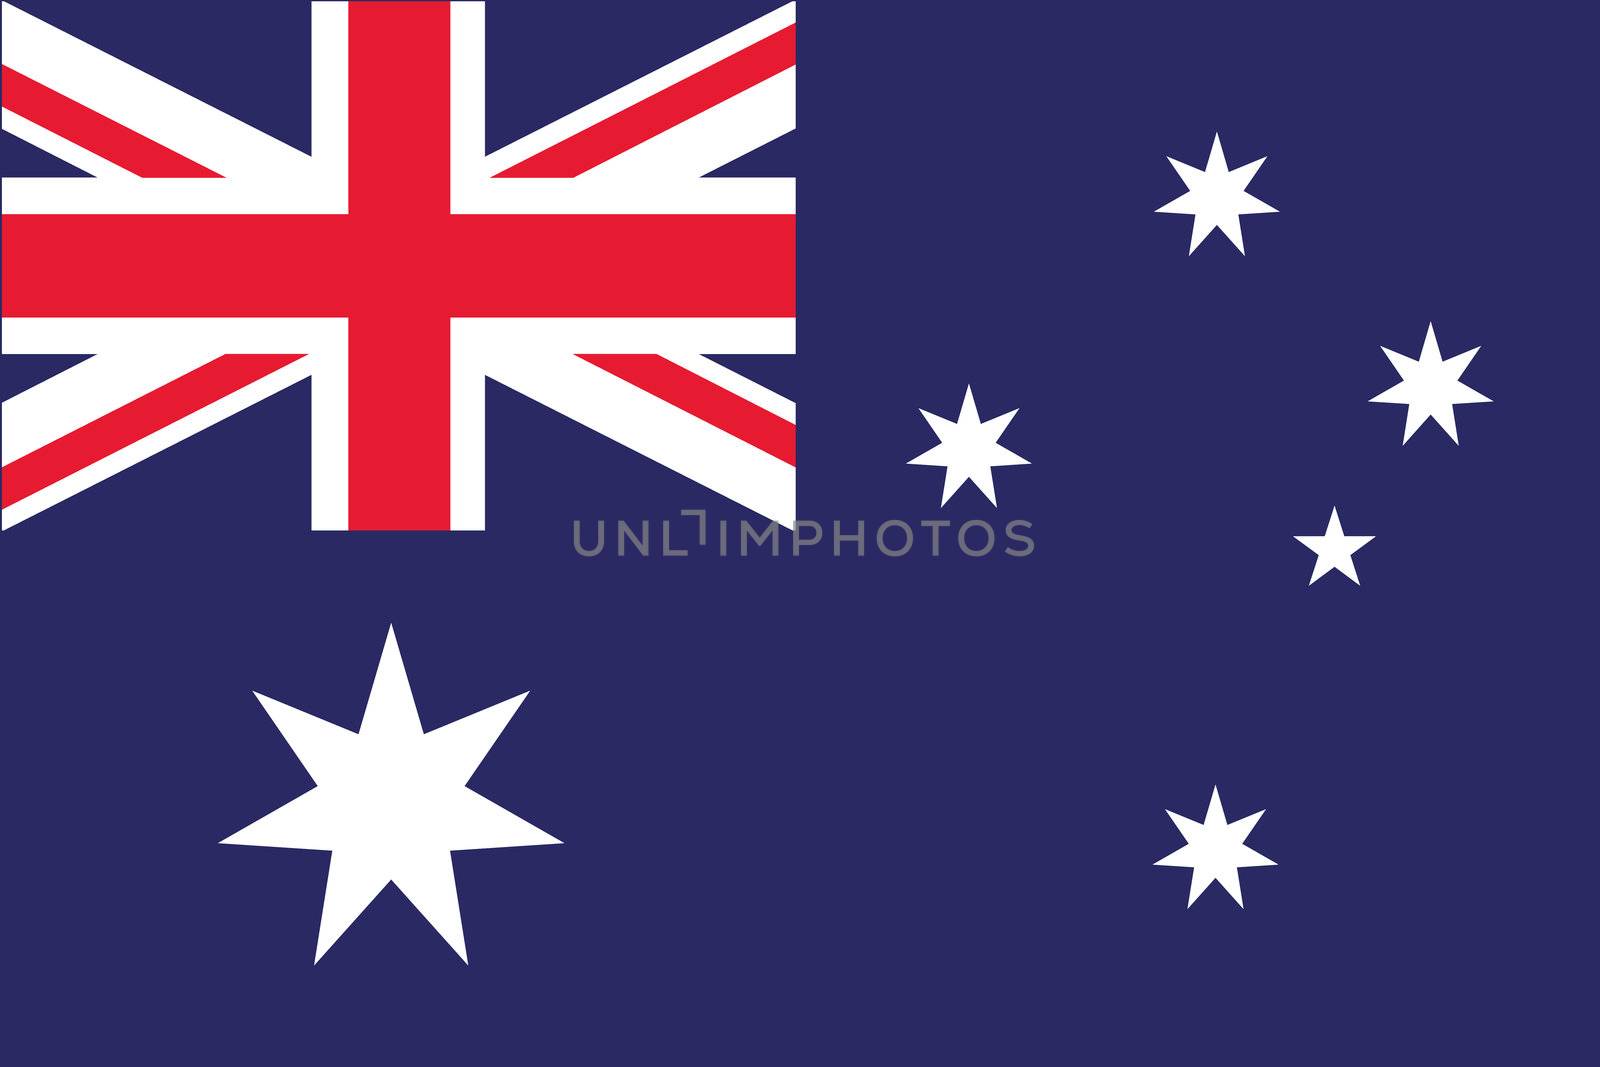 An illustration of the flag of Australia